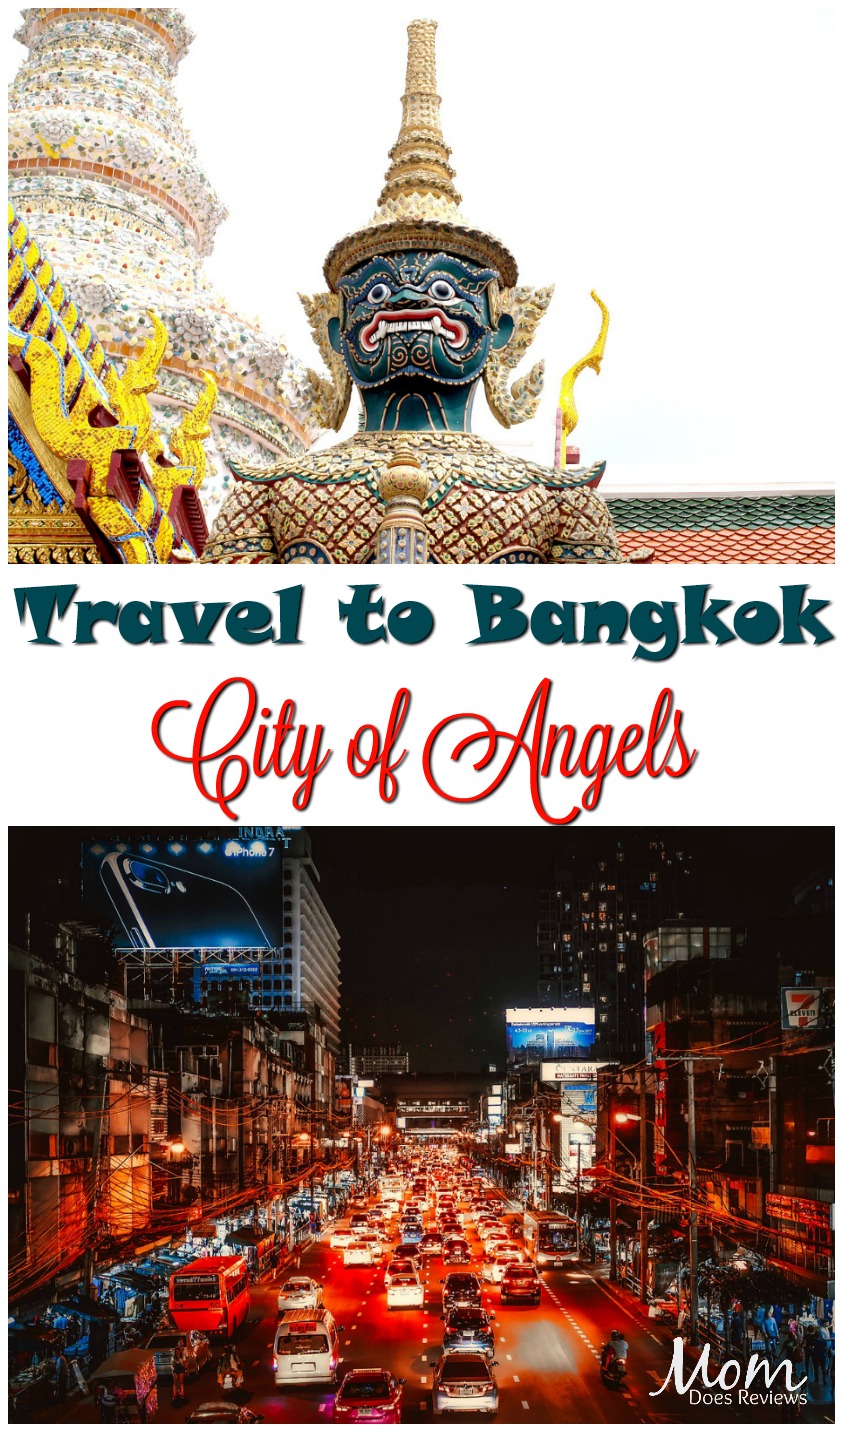 Travel to Bangkok: City of Angels #travel #vacation #destination #bangkok 